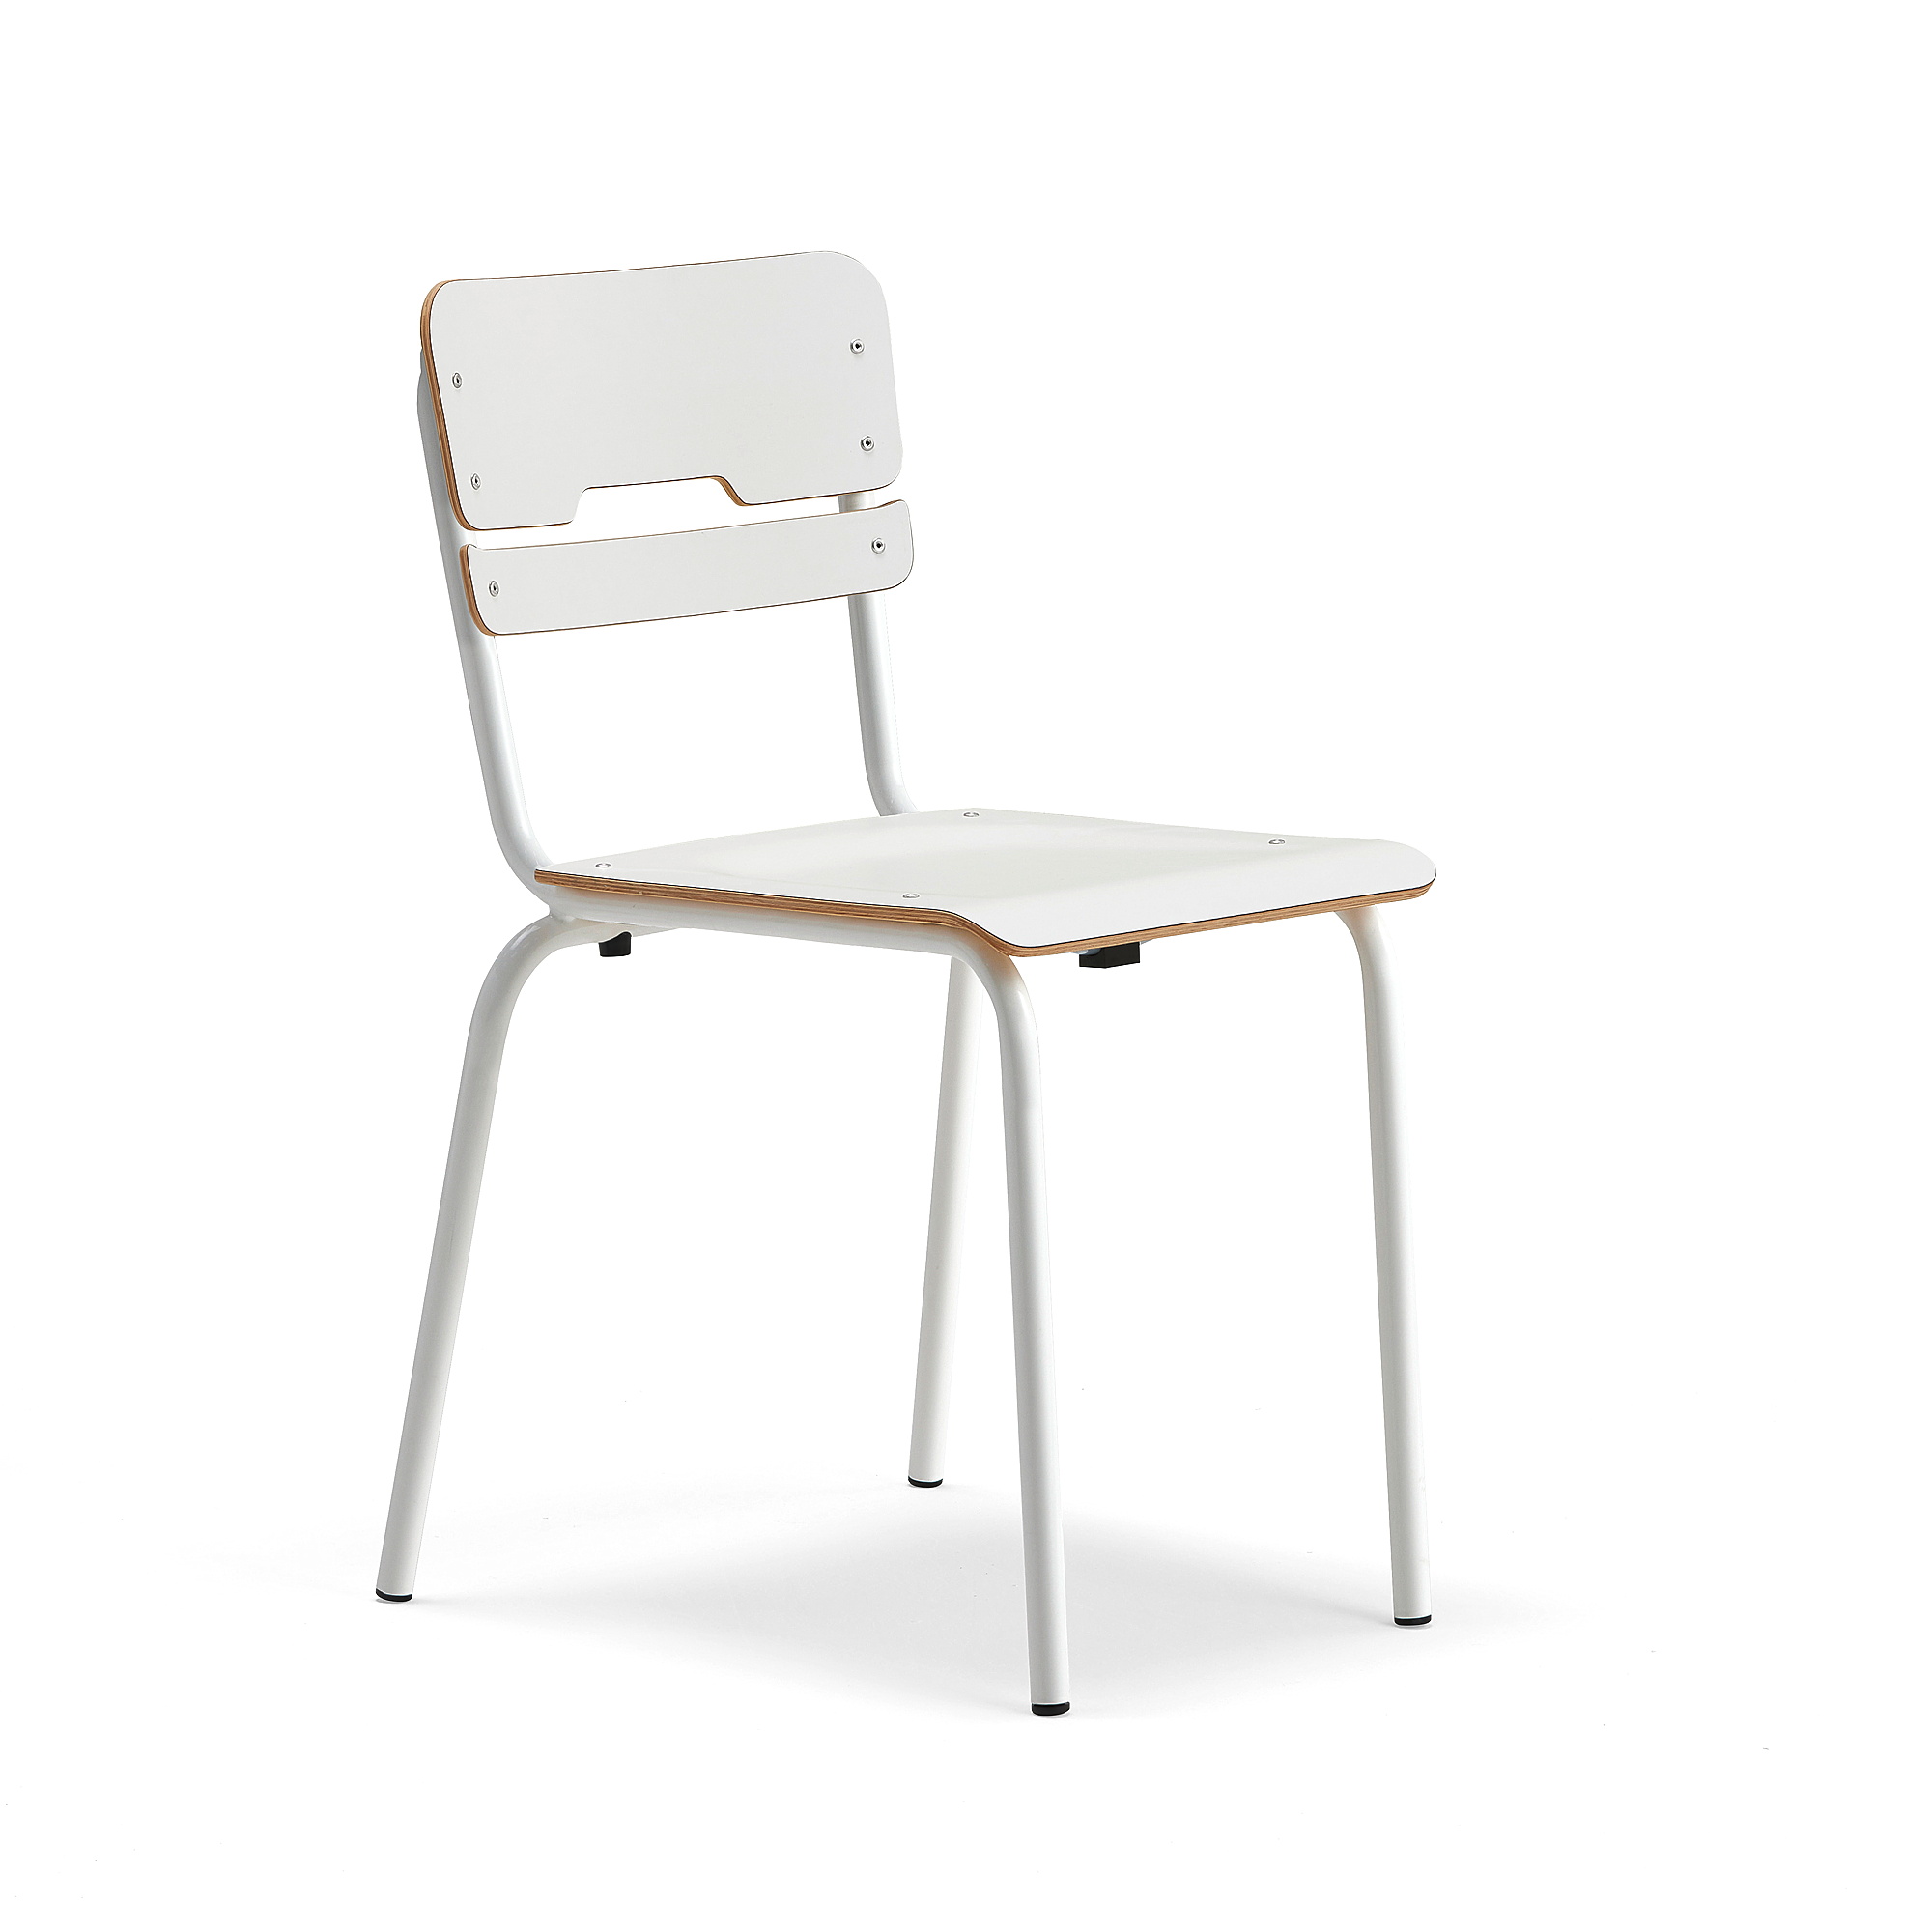 Školní židle SCIENTIA, sedák 390x390 mm, výška 460 mm, bílá/bílá